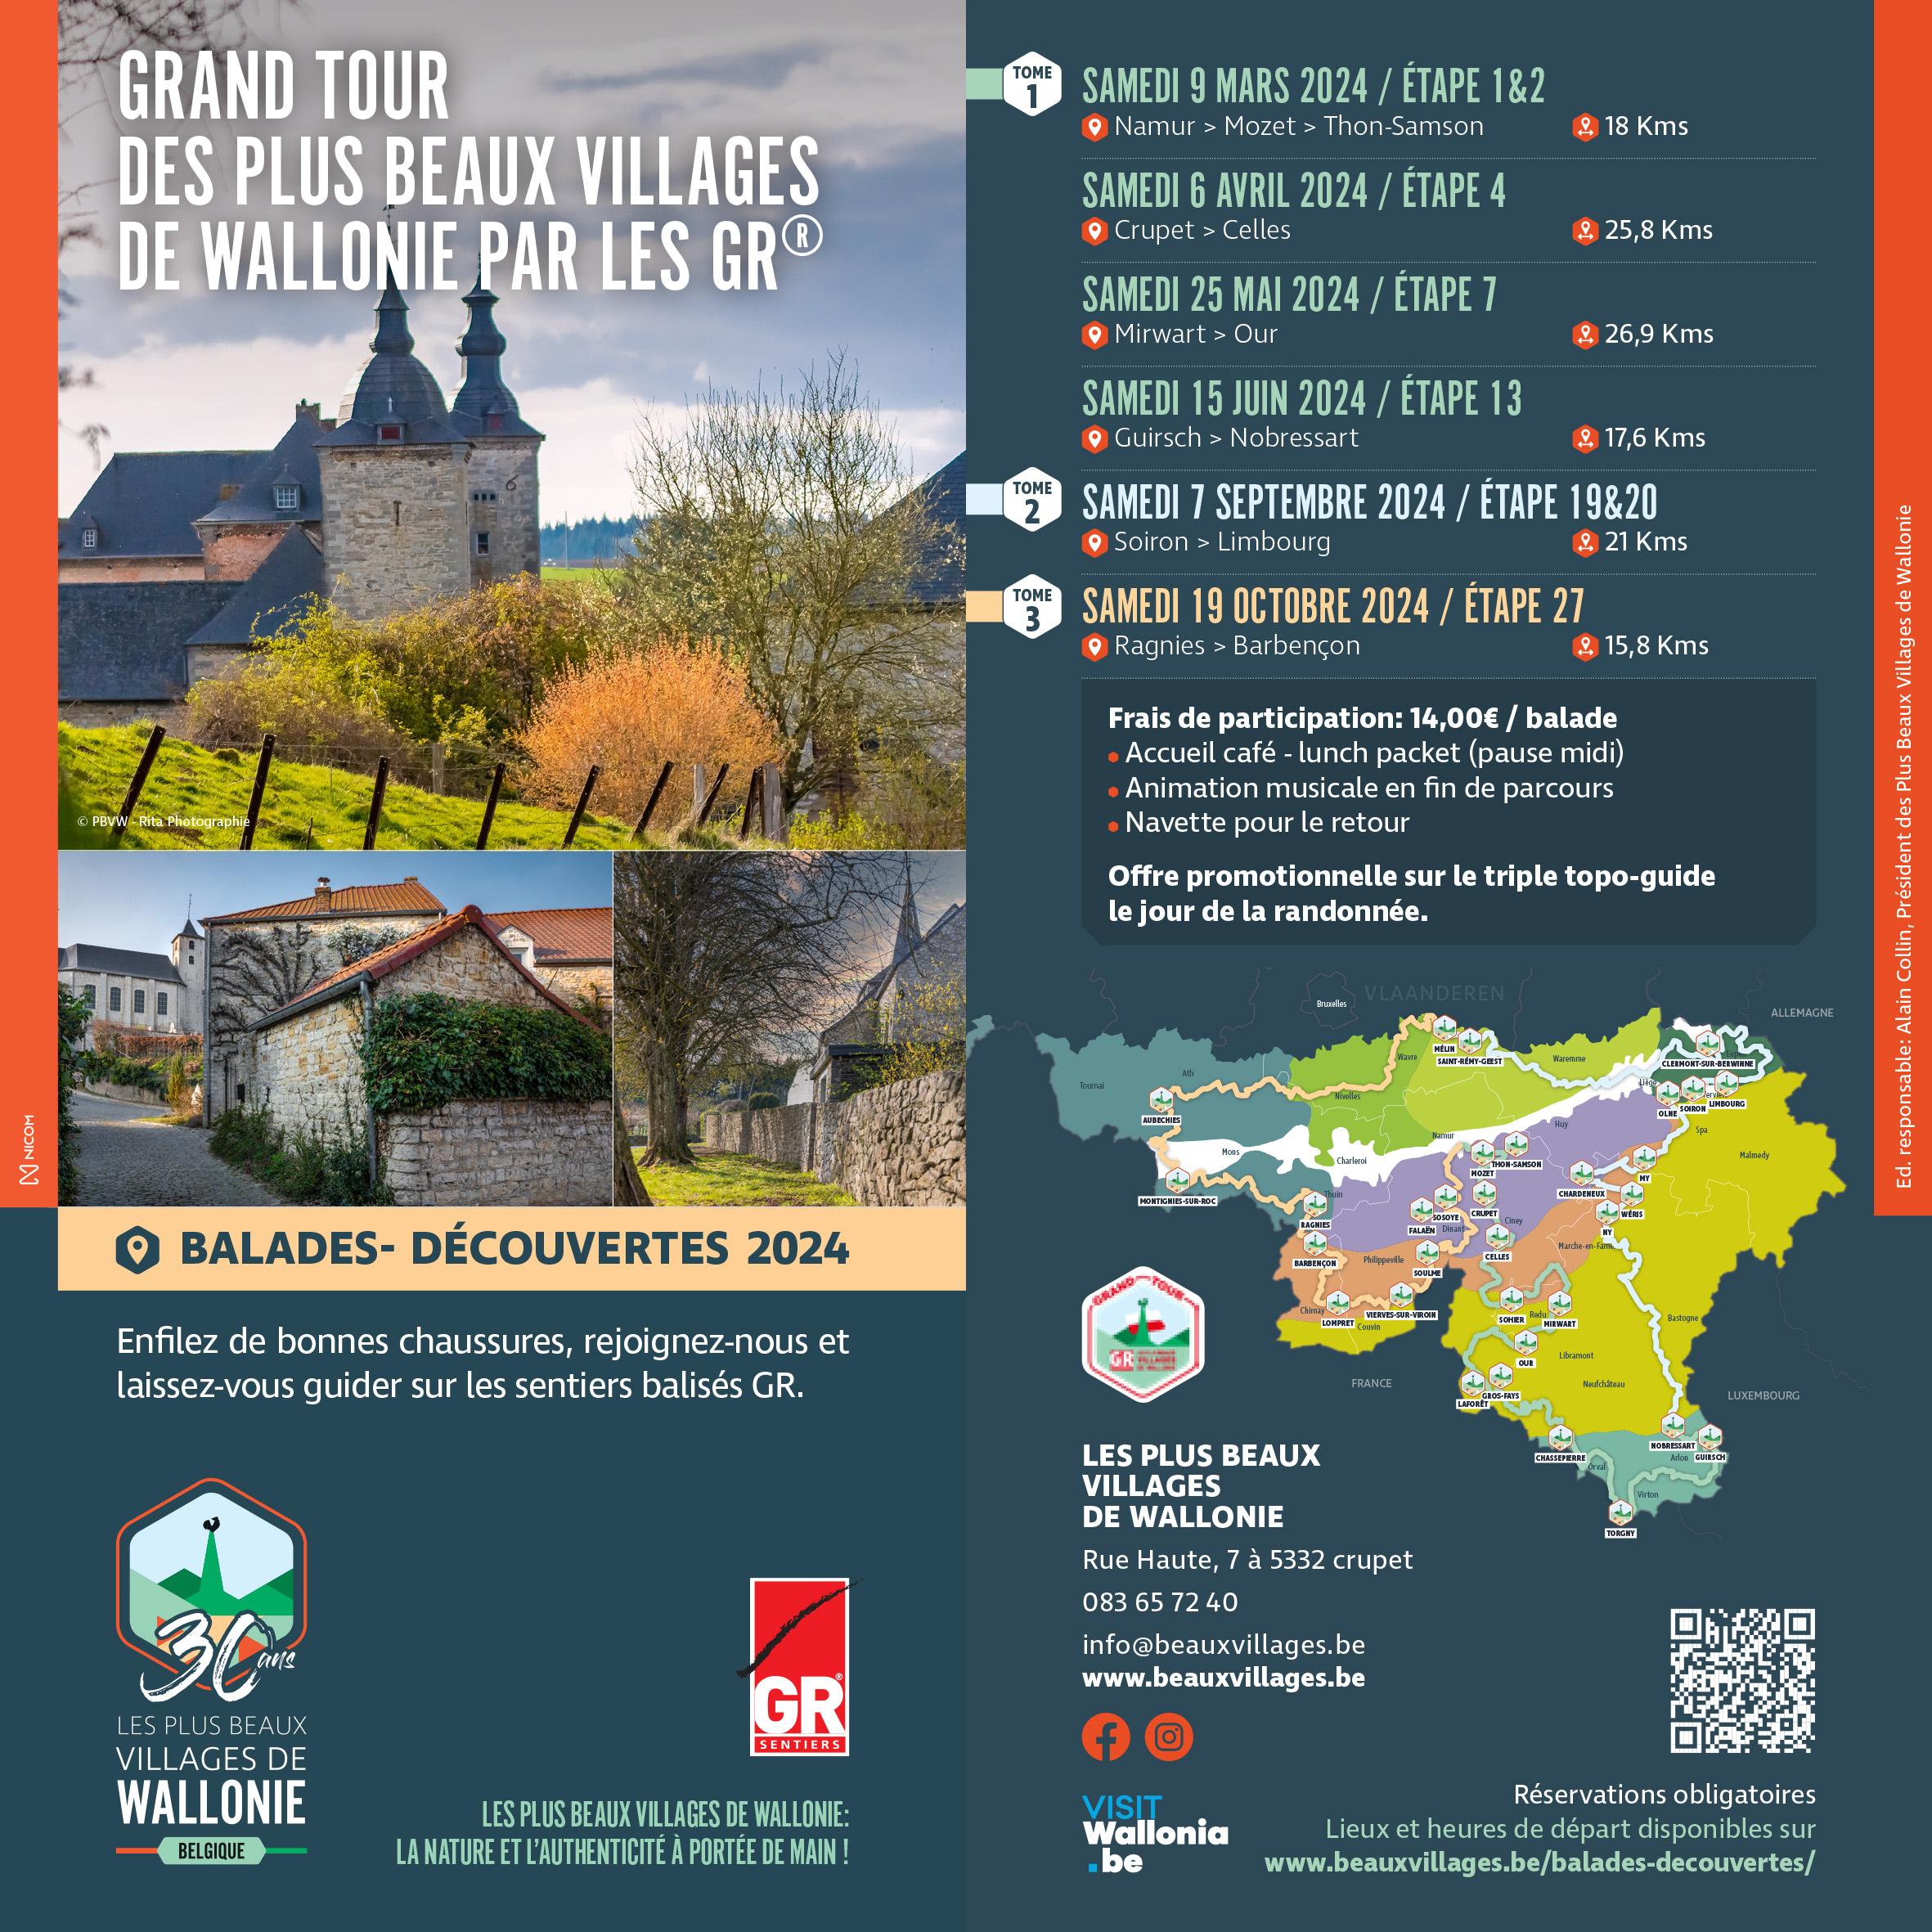 Grand tour des Plus Beaux Villages de Wallonie par les GR